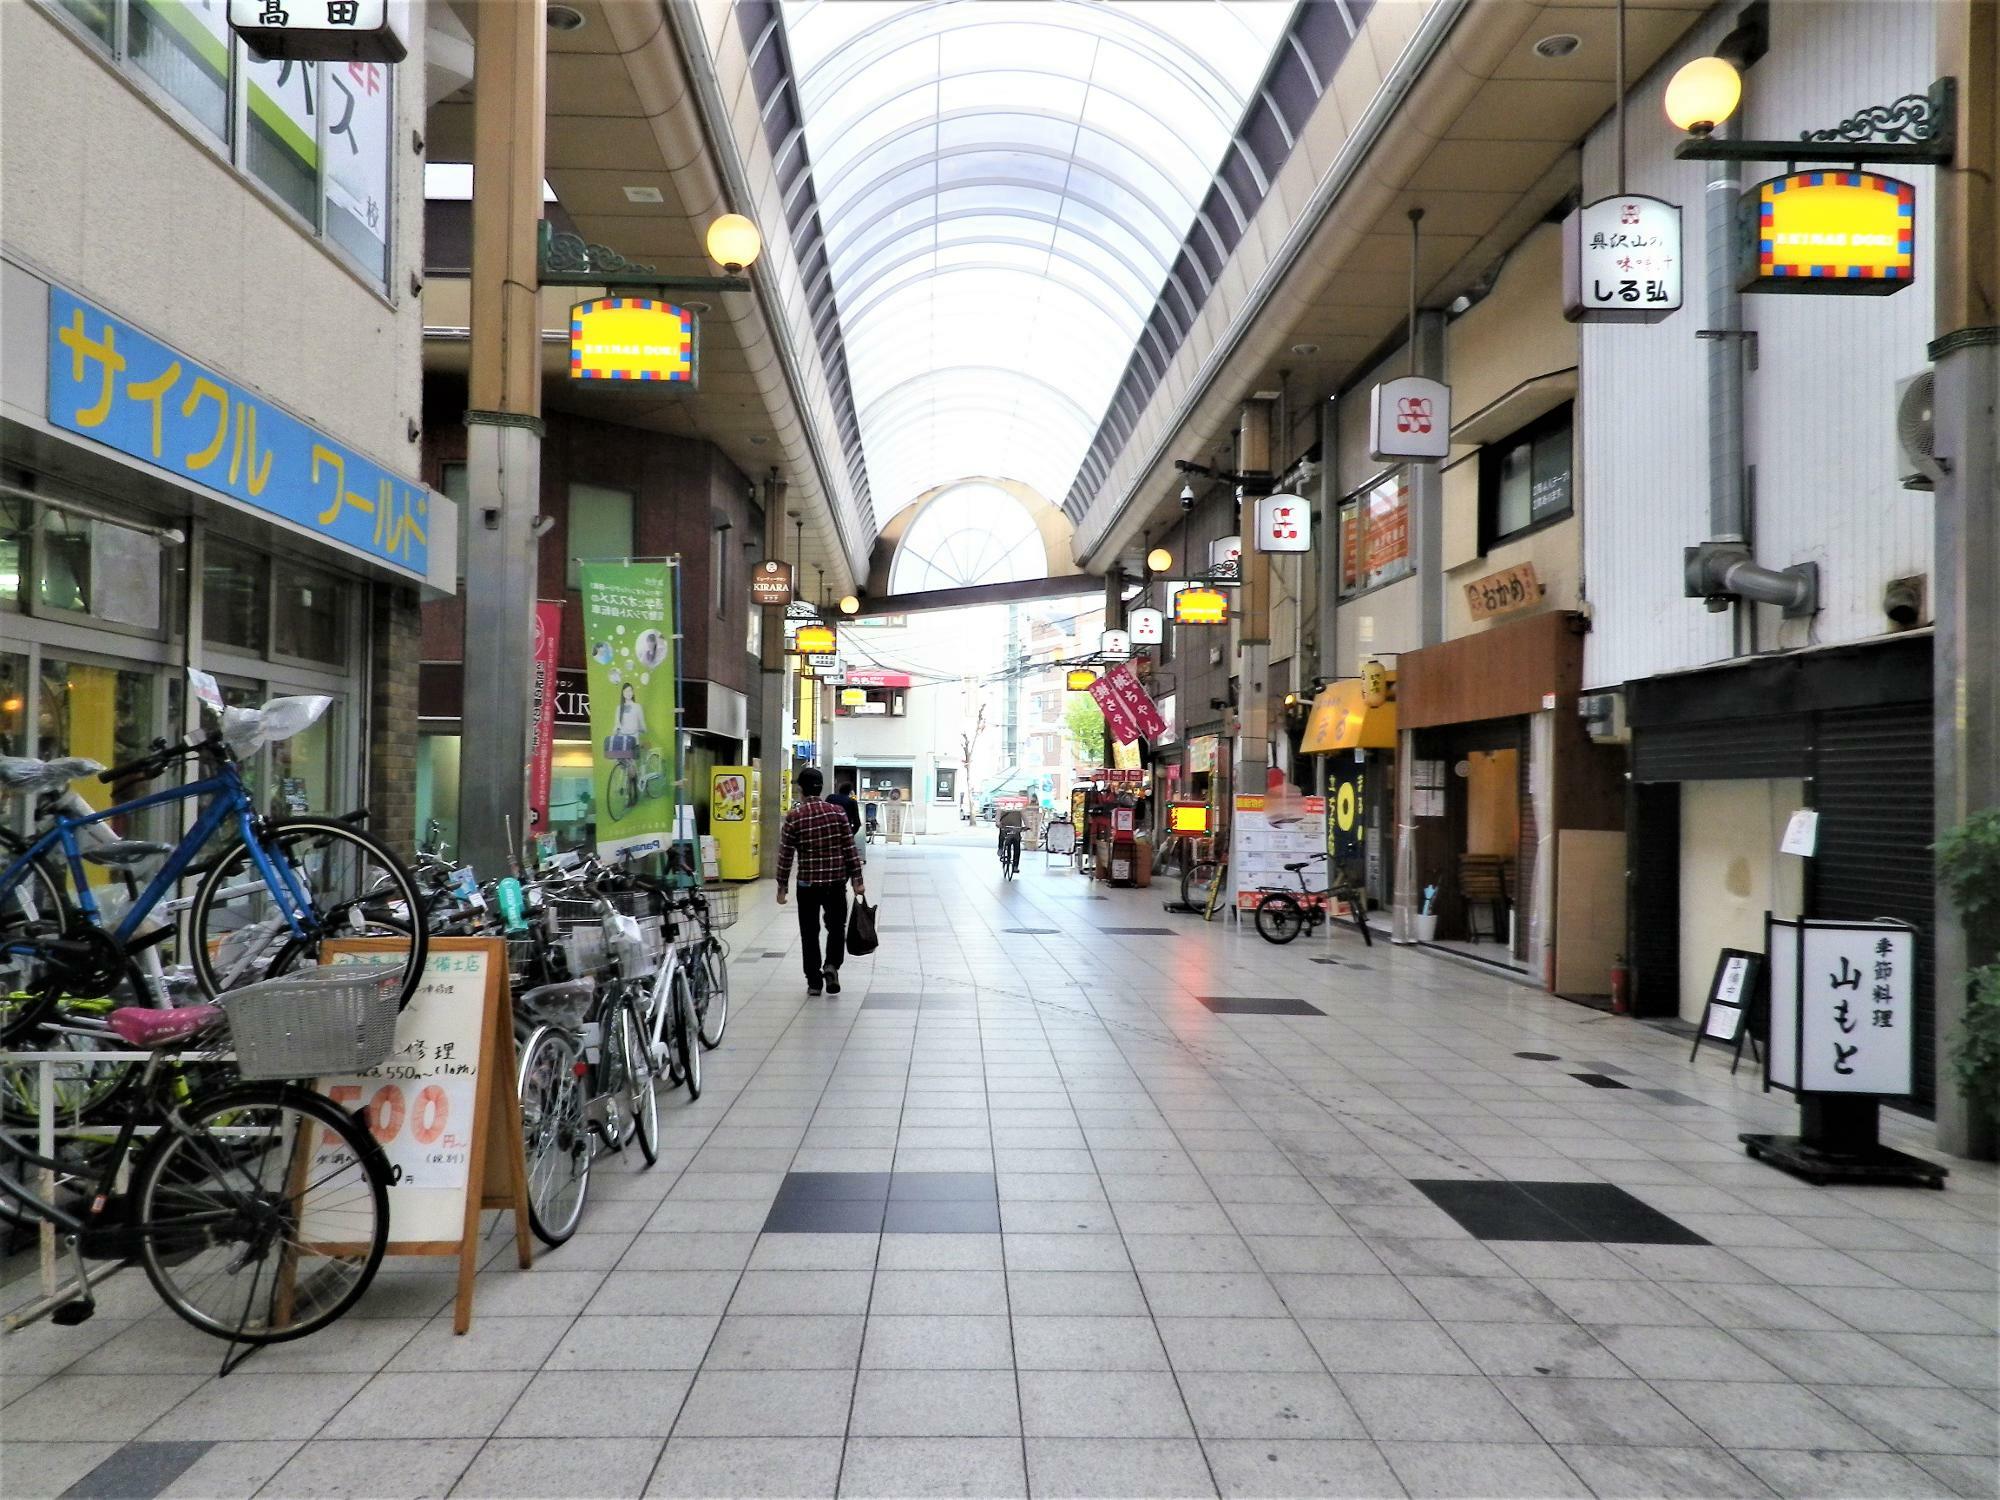 綺麗に舗装された歩きやすい商店街です。